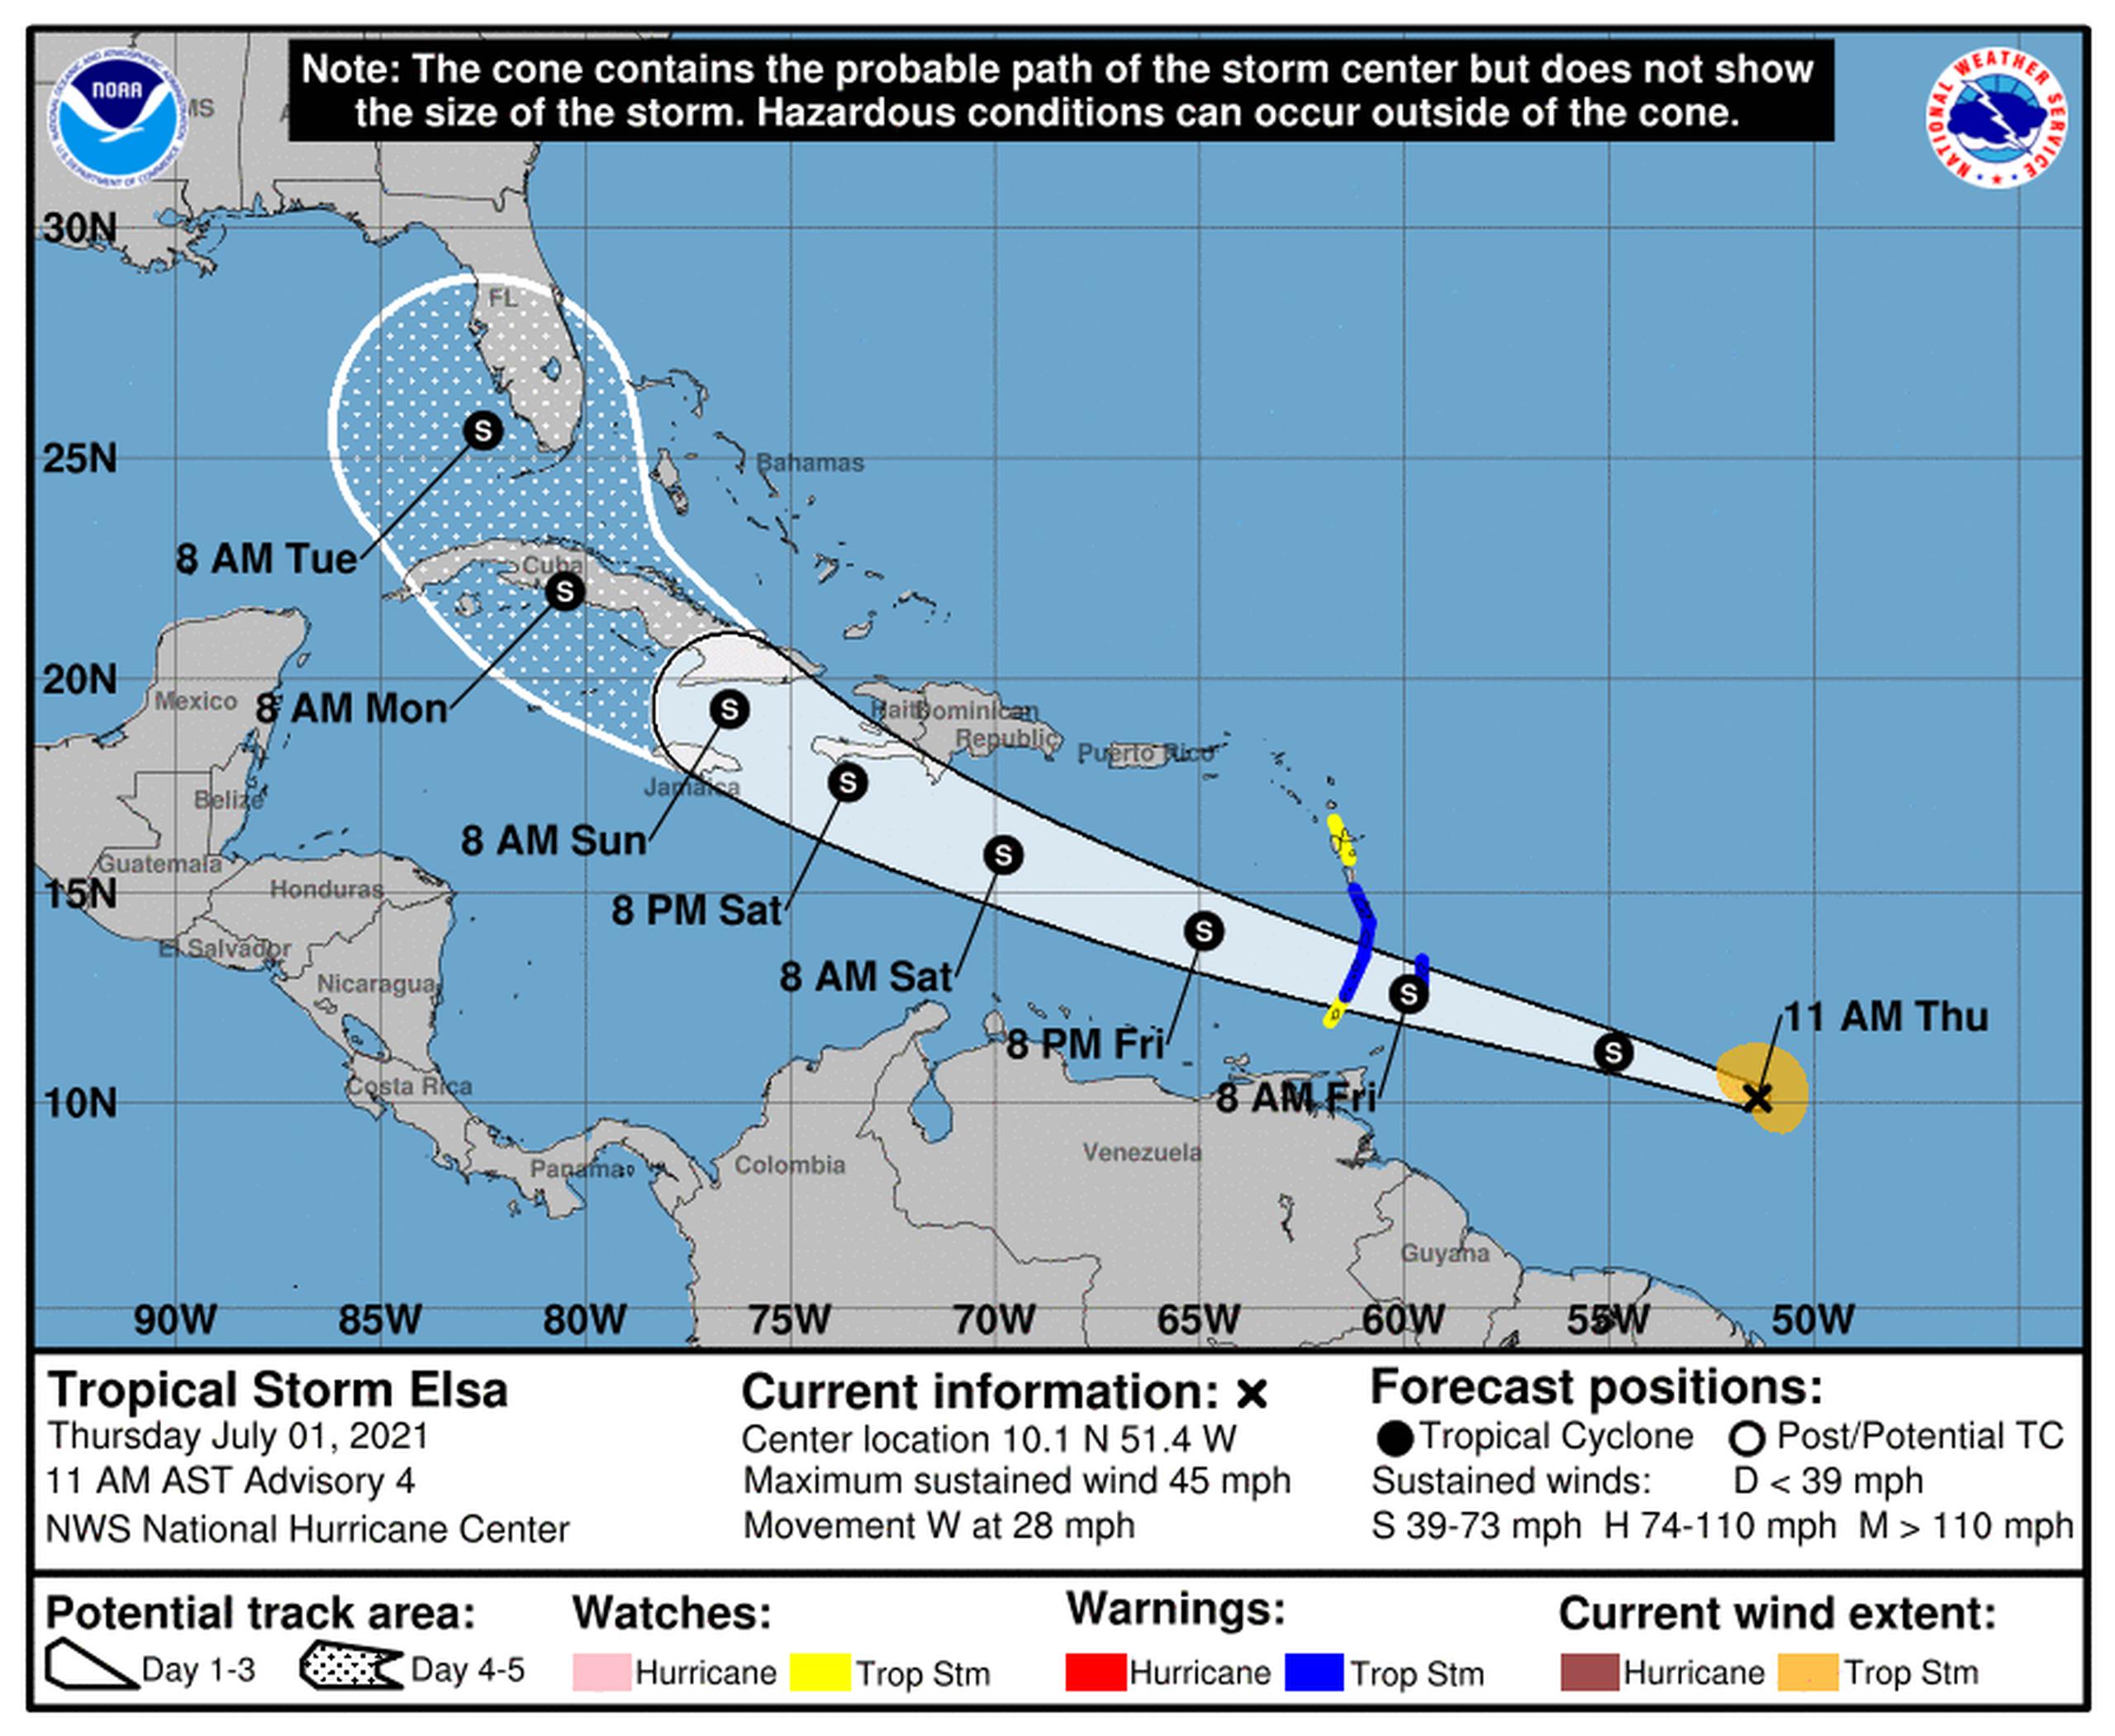 Pronóstico de la tormenta tropical Elsa emitido a las 11:00 de la mañana por el Centro Nacional de Huracanes de los Estados Unidos el 1 de julio de 2021.